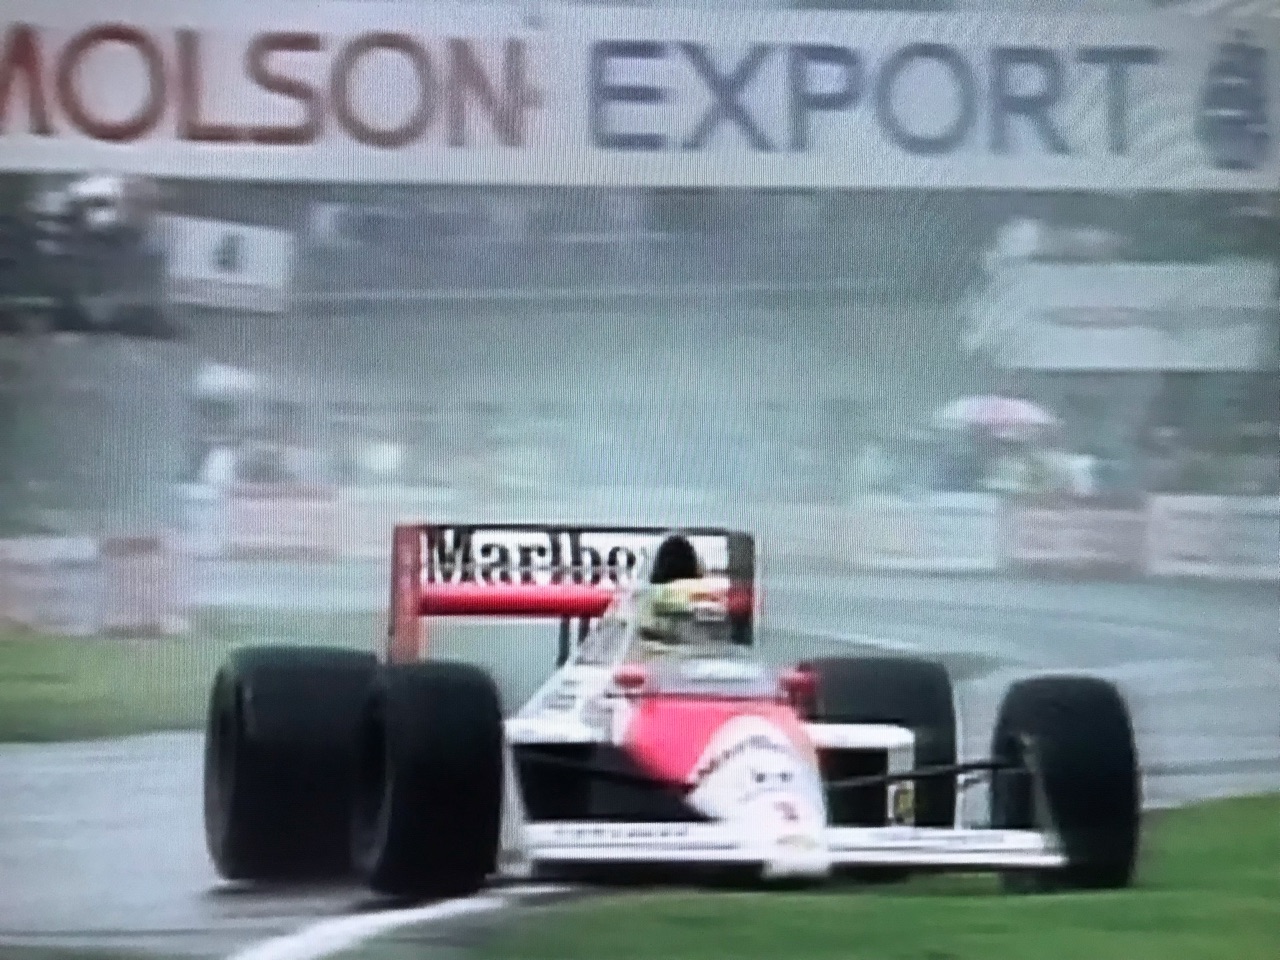 過去のレースを振り返る 1989年カナダGP : F1 えきぞーすとのーと